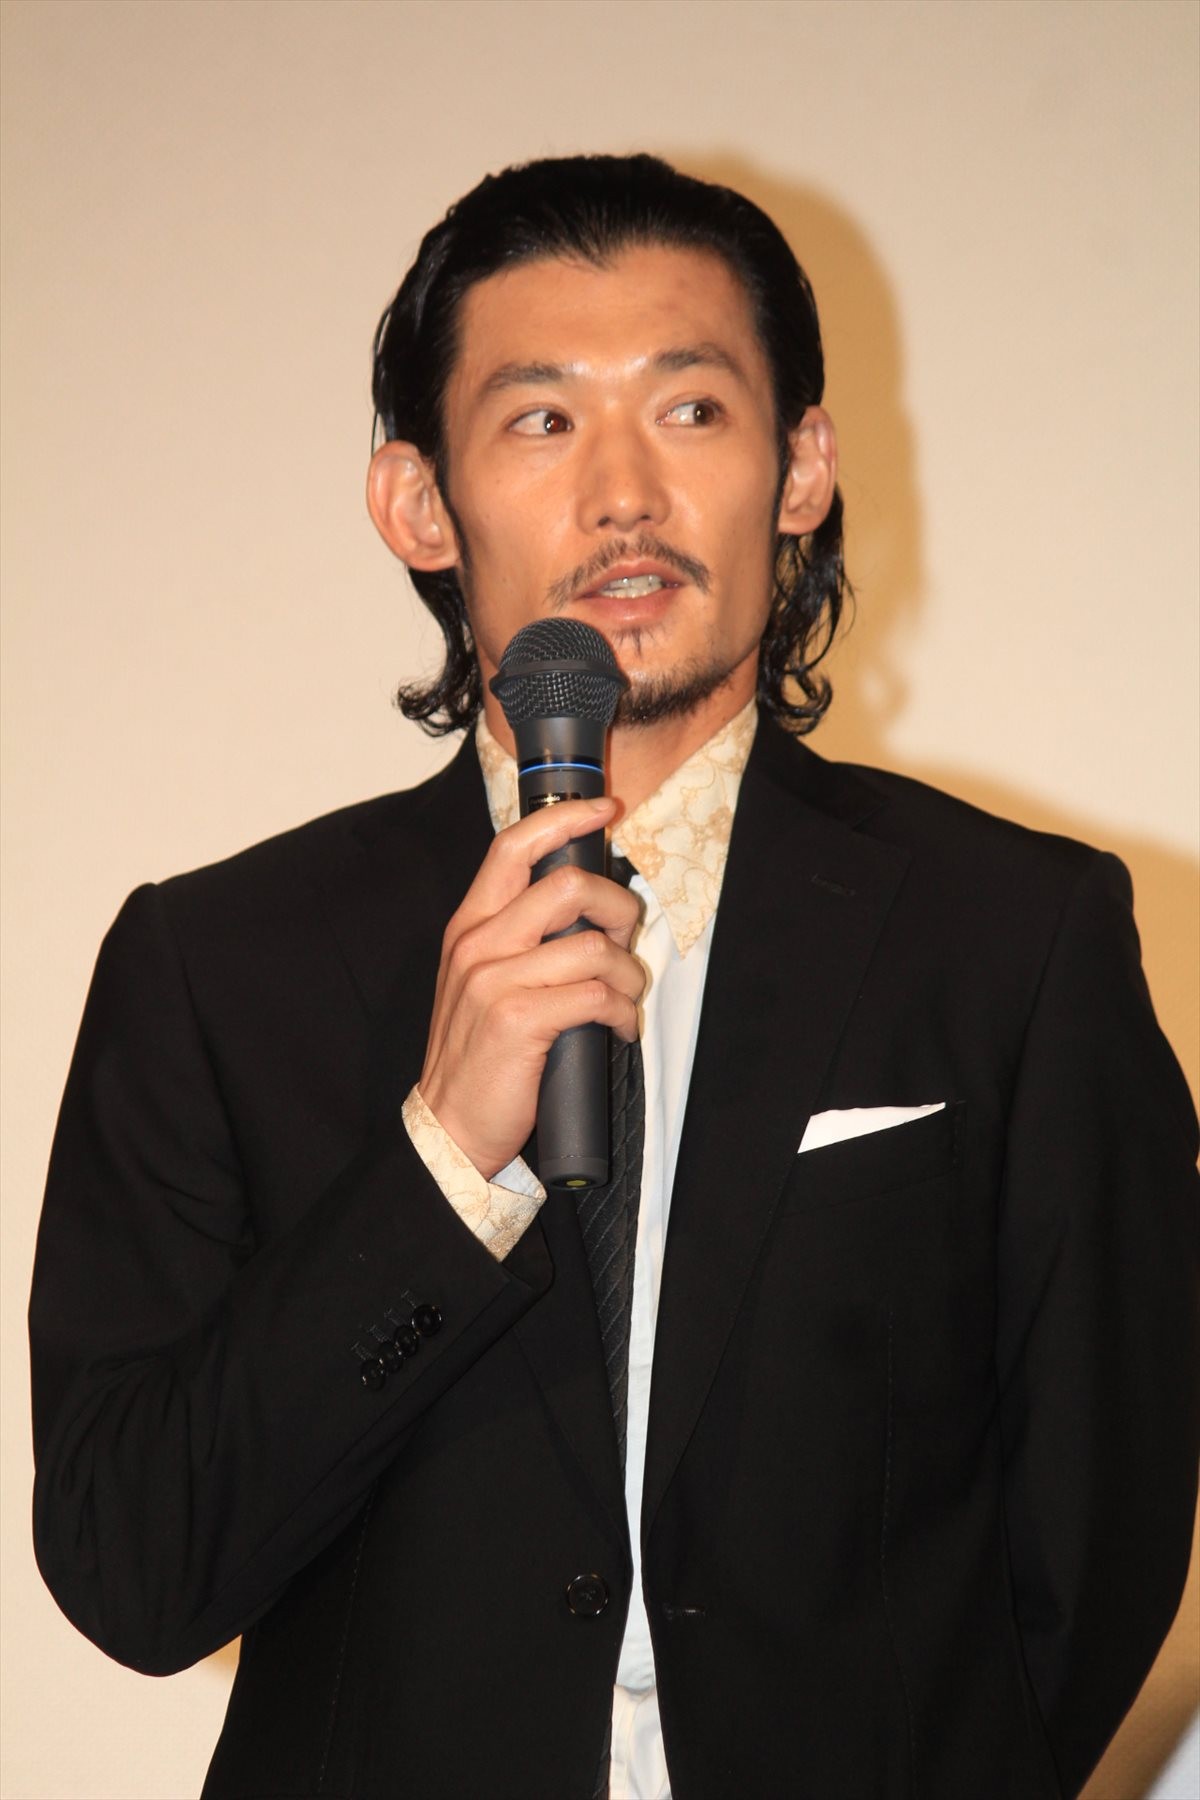 ボイメン田中俊介「1年かけて役と向き合えて幸せだった」役作りで14キロ落とす